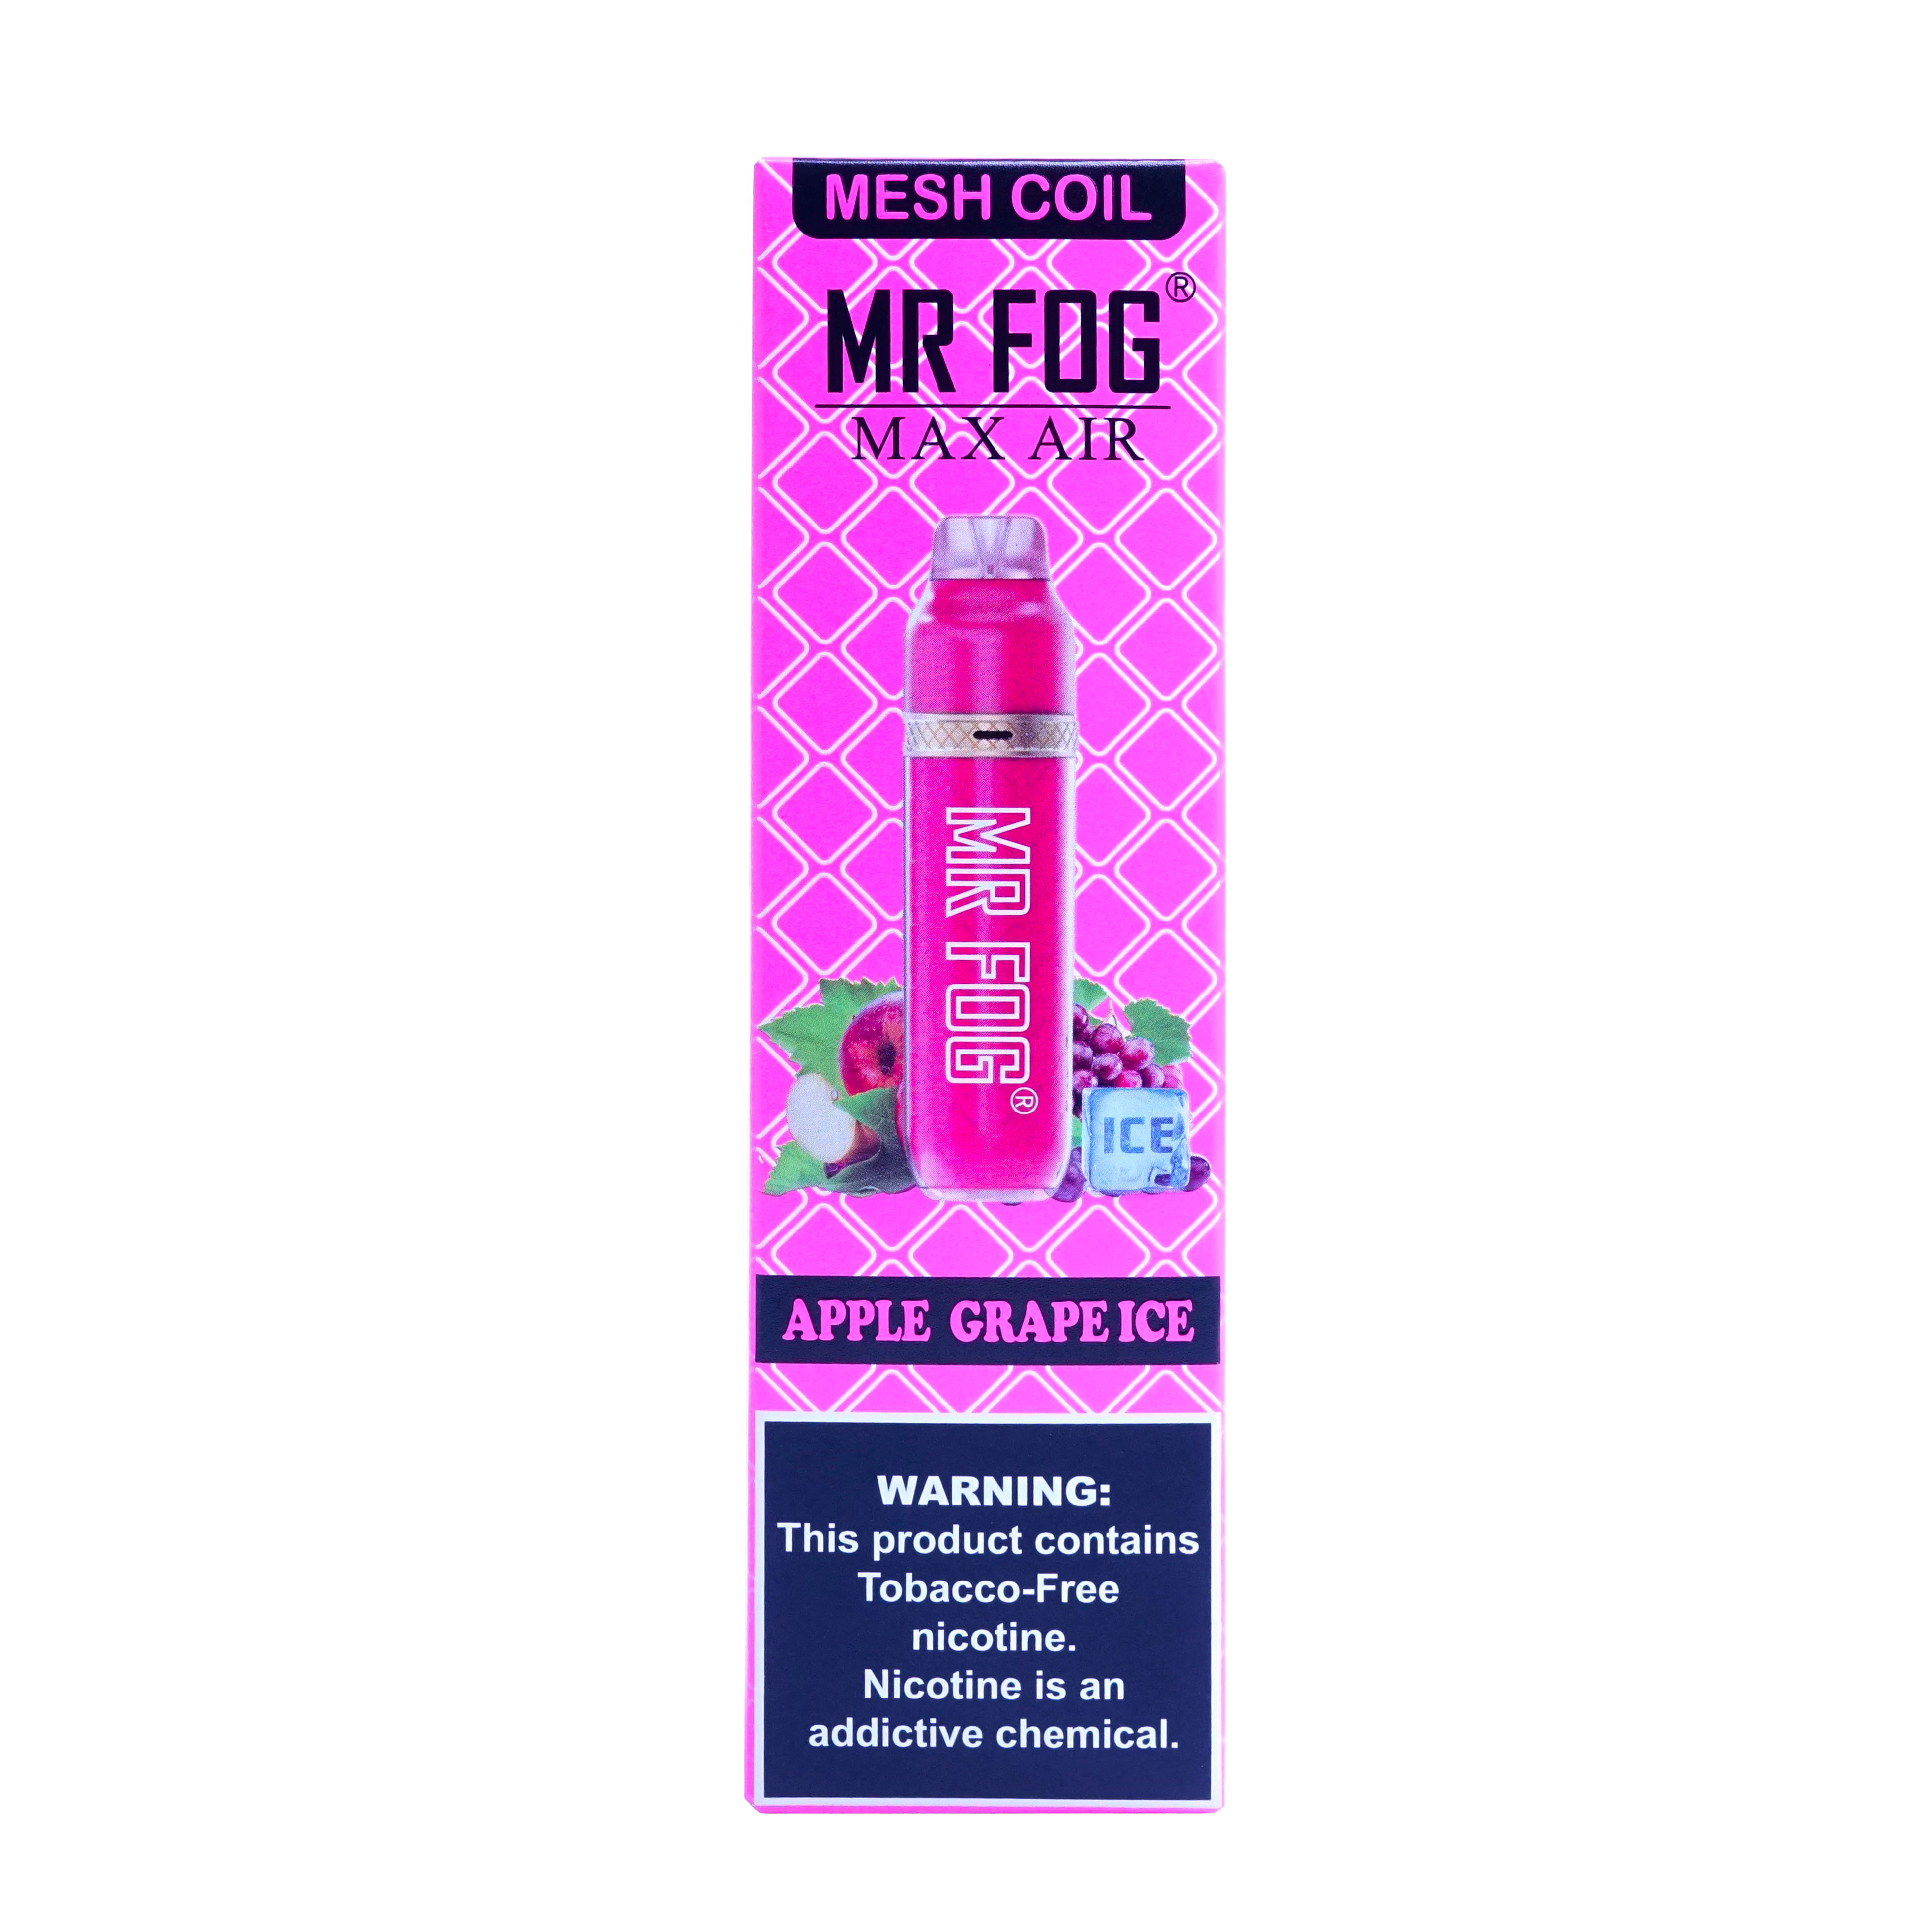 Mr Fog Max Air Single-use Vape 3000 Puffs